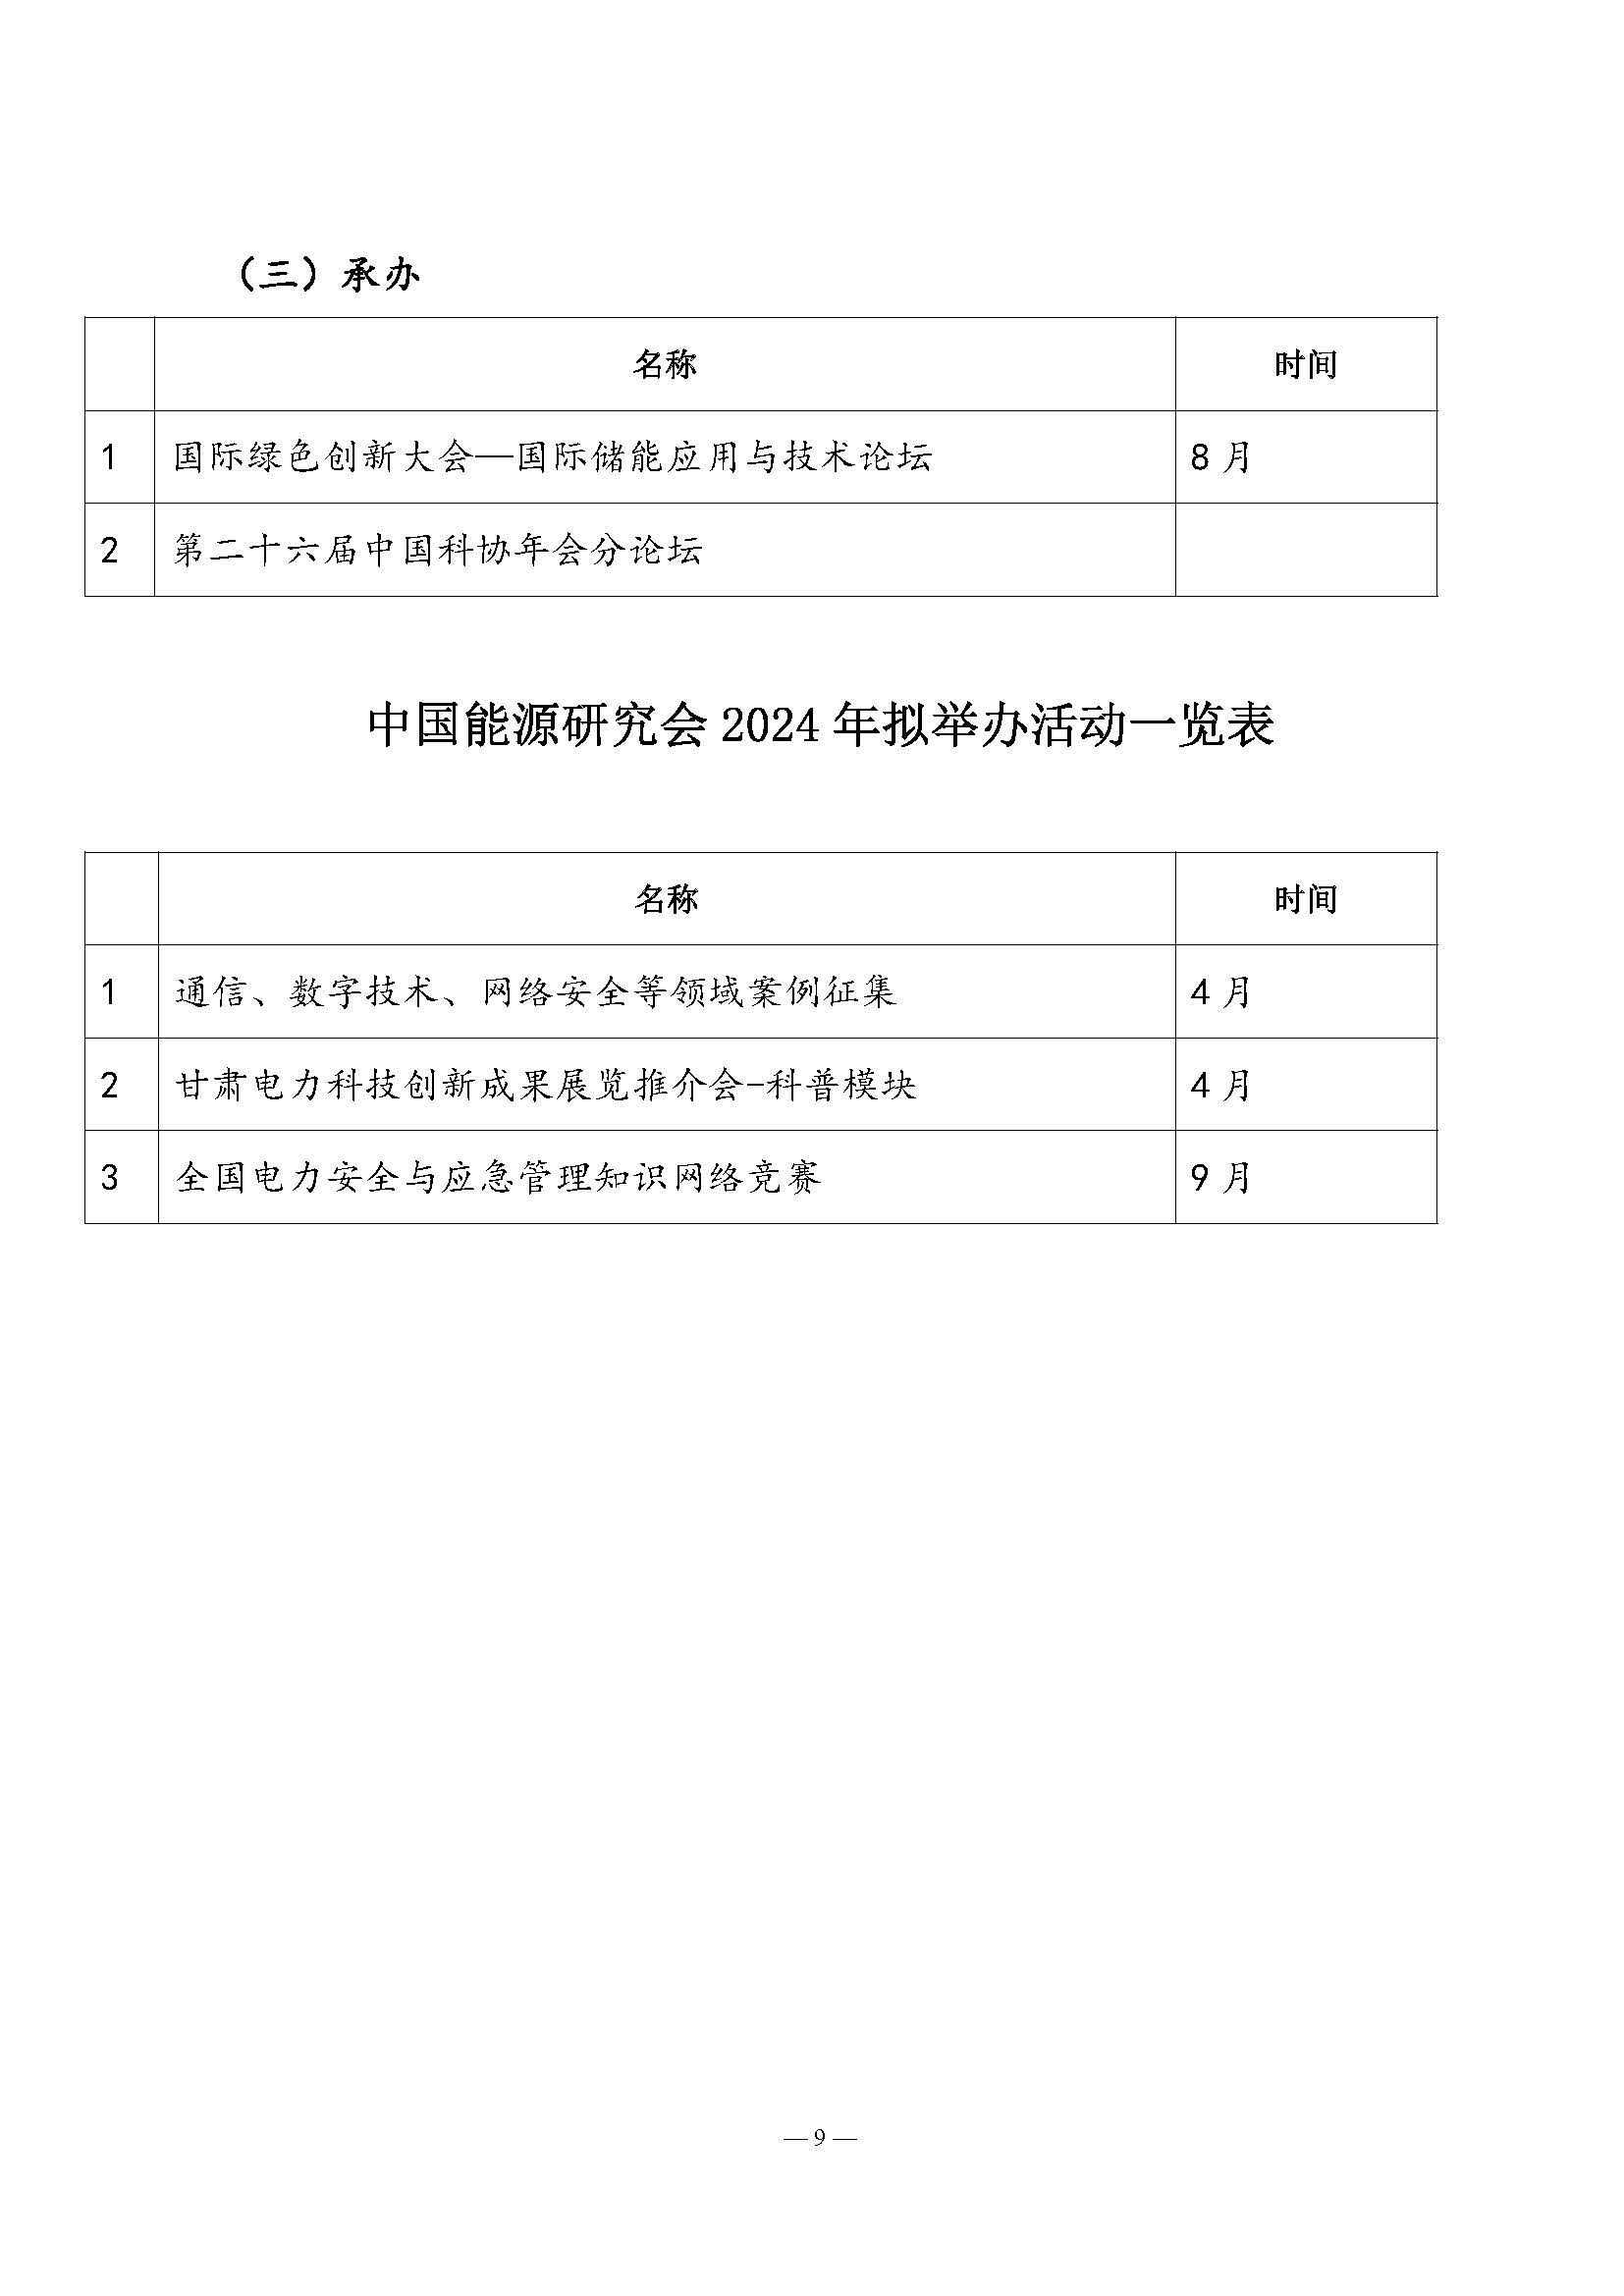 中国能源研究会2023年学术活动和项目汇总(3)_页面_9.jpg